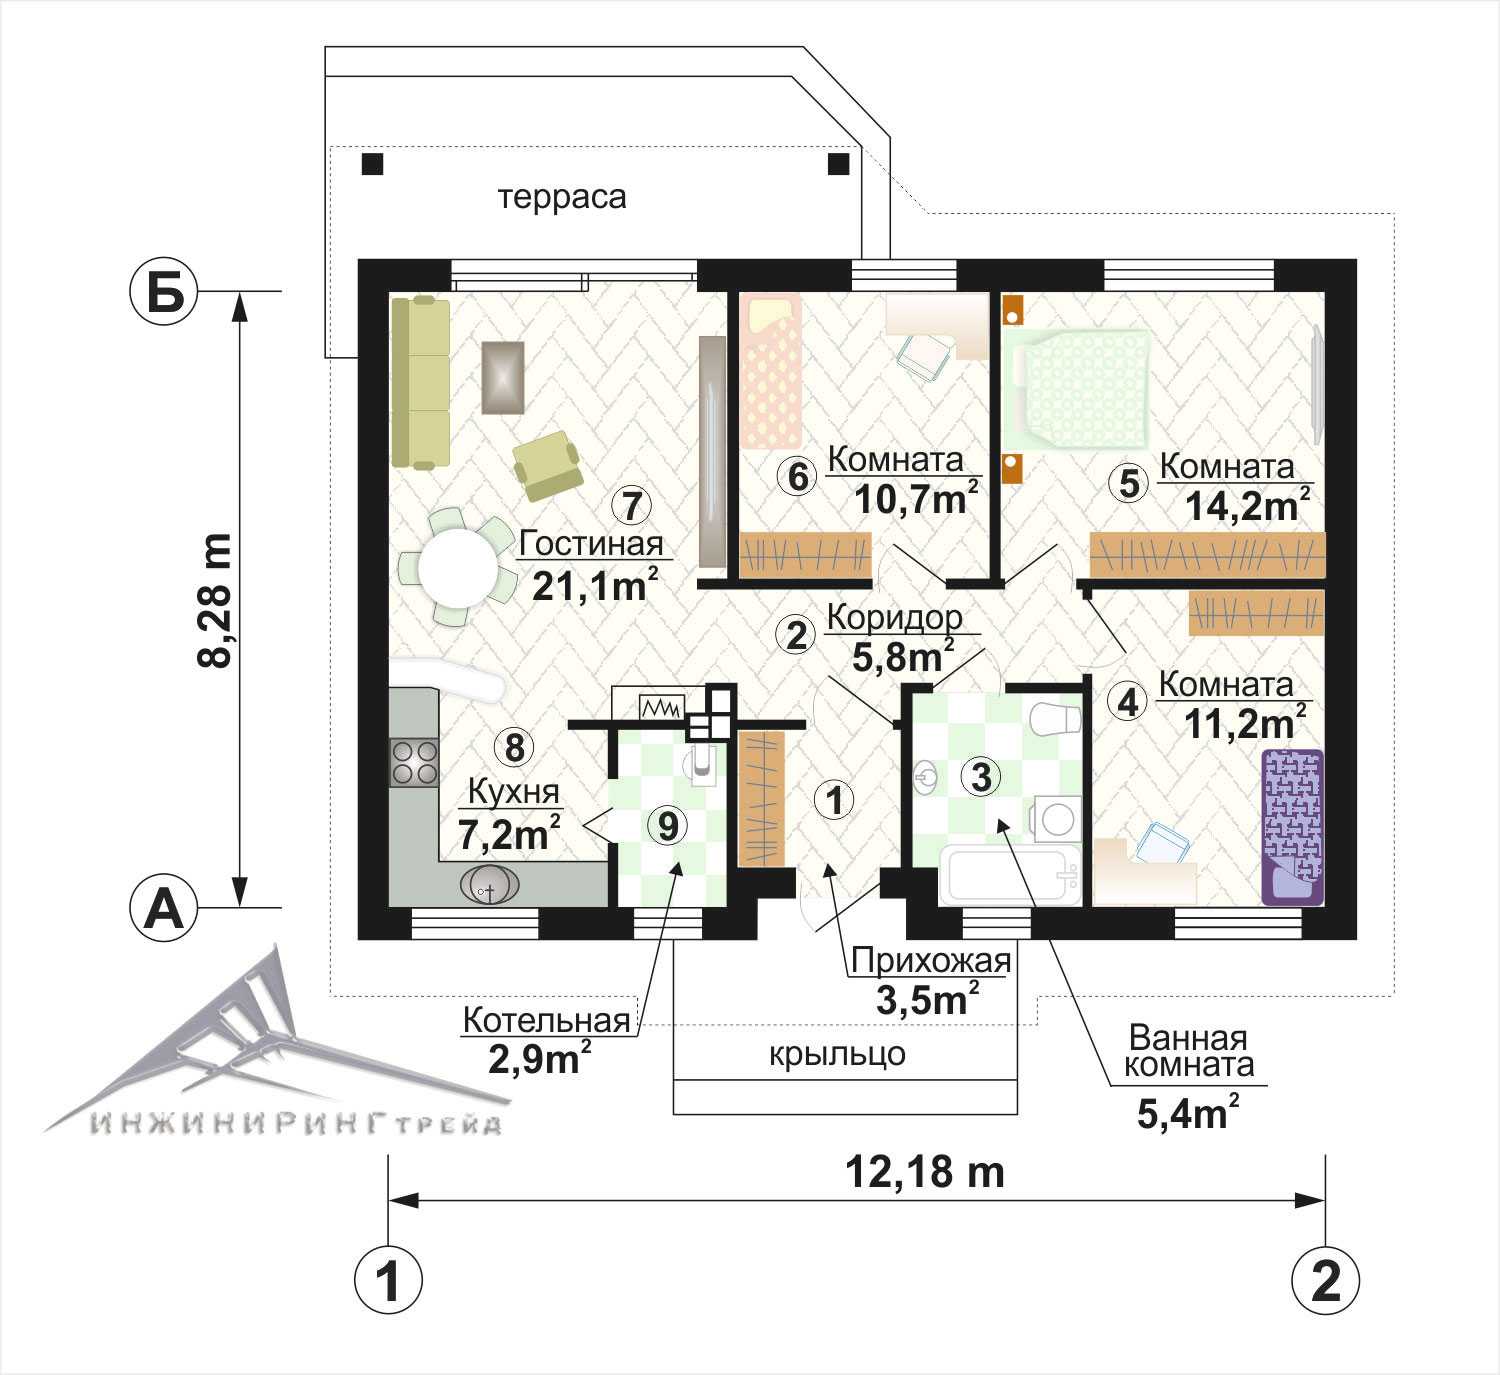 Планировка одноэтажного дома 100 м²: основные преимущества и особенности проекта